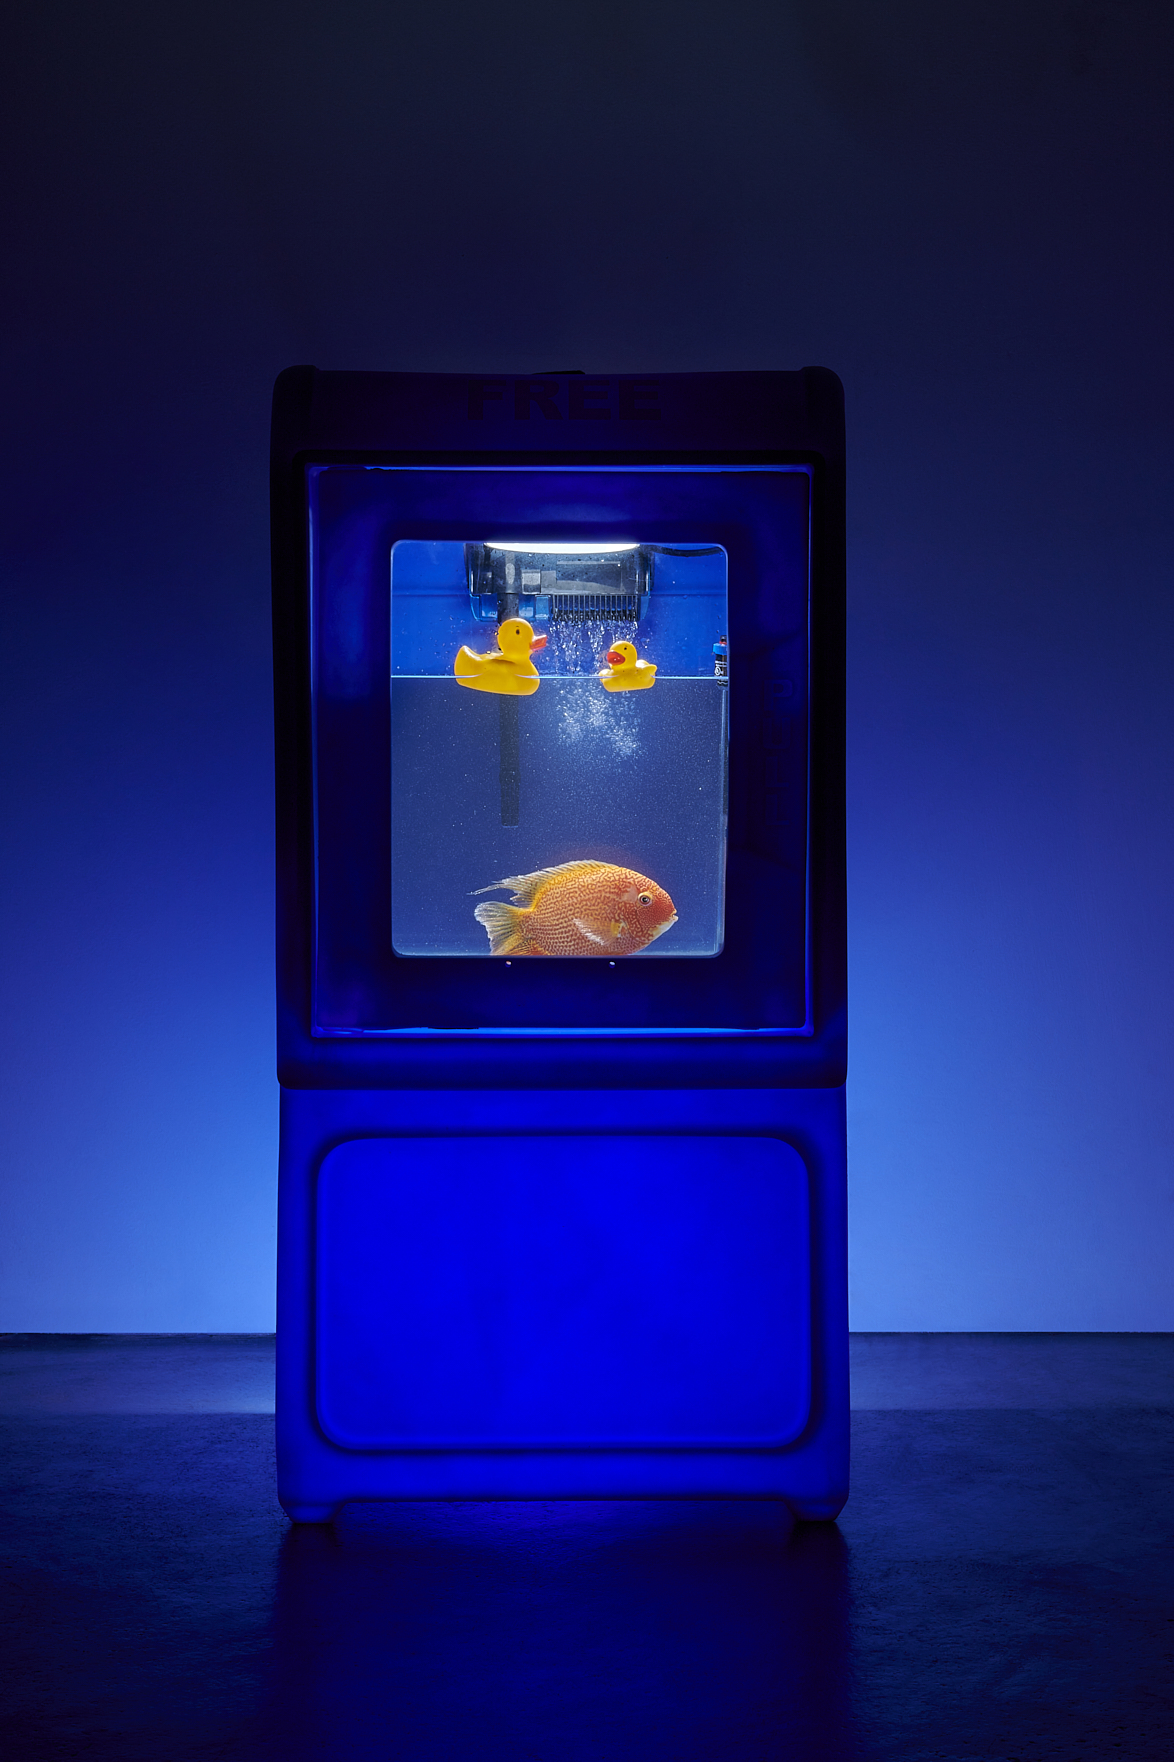 a fish in a tank with rubber ducks. Carlo Sampietro